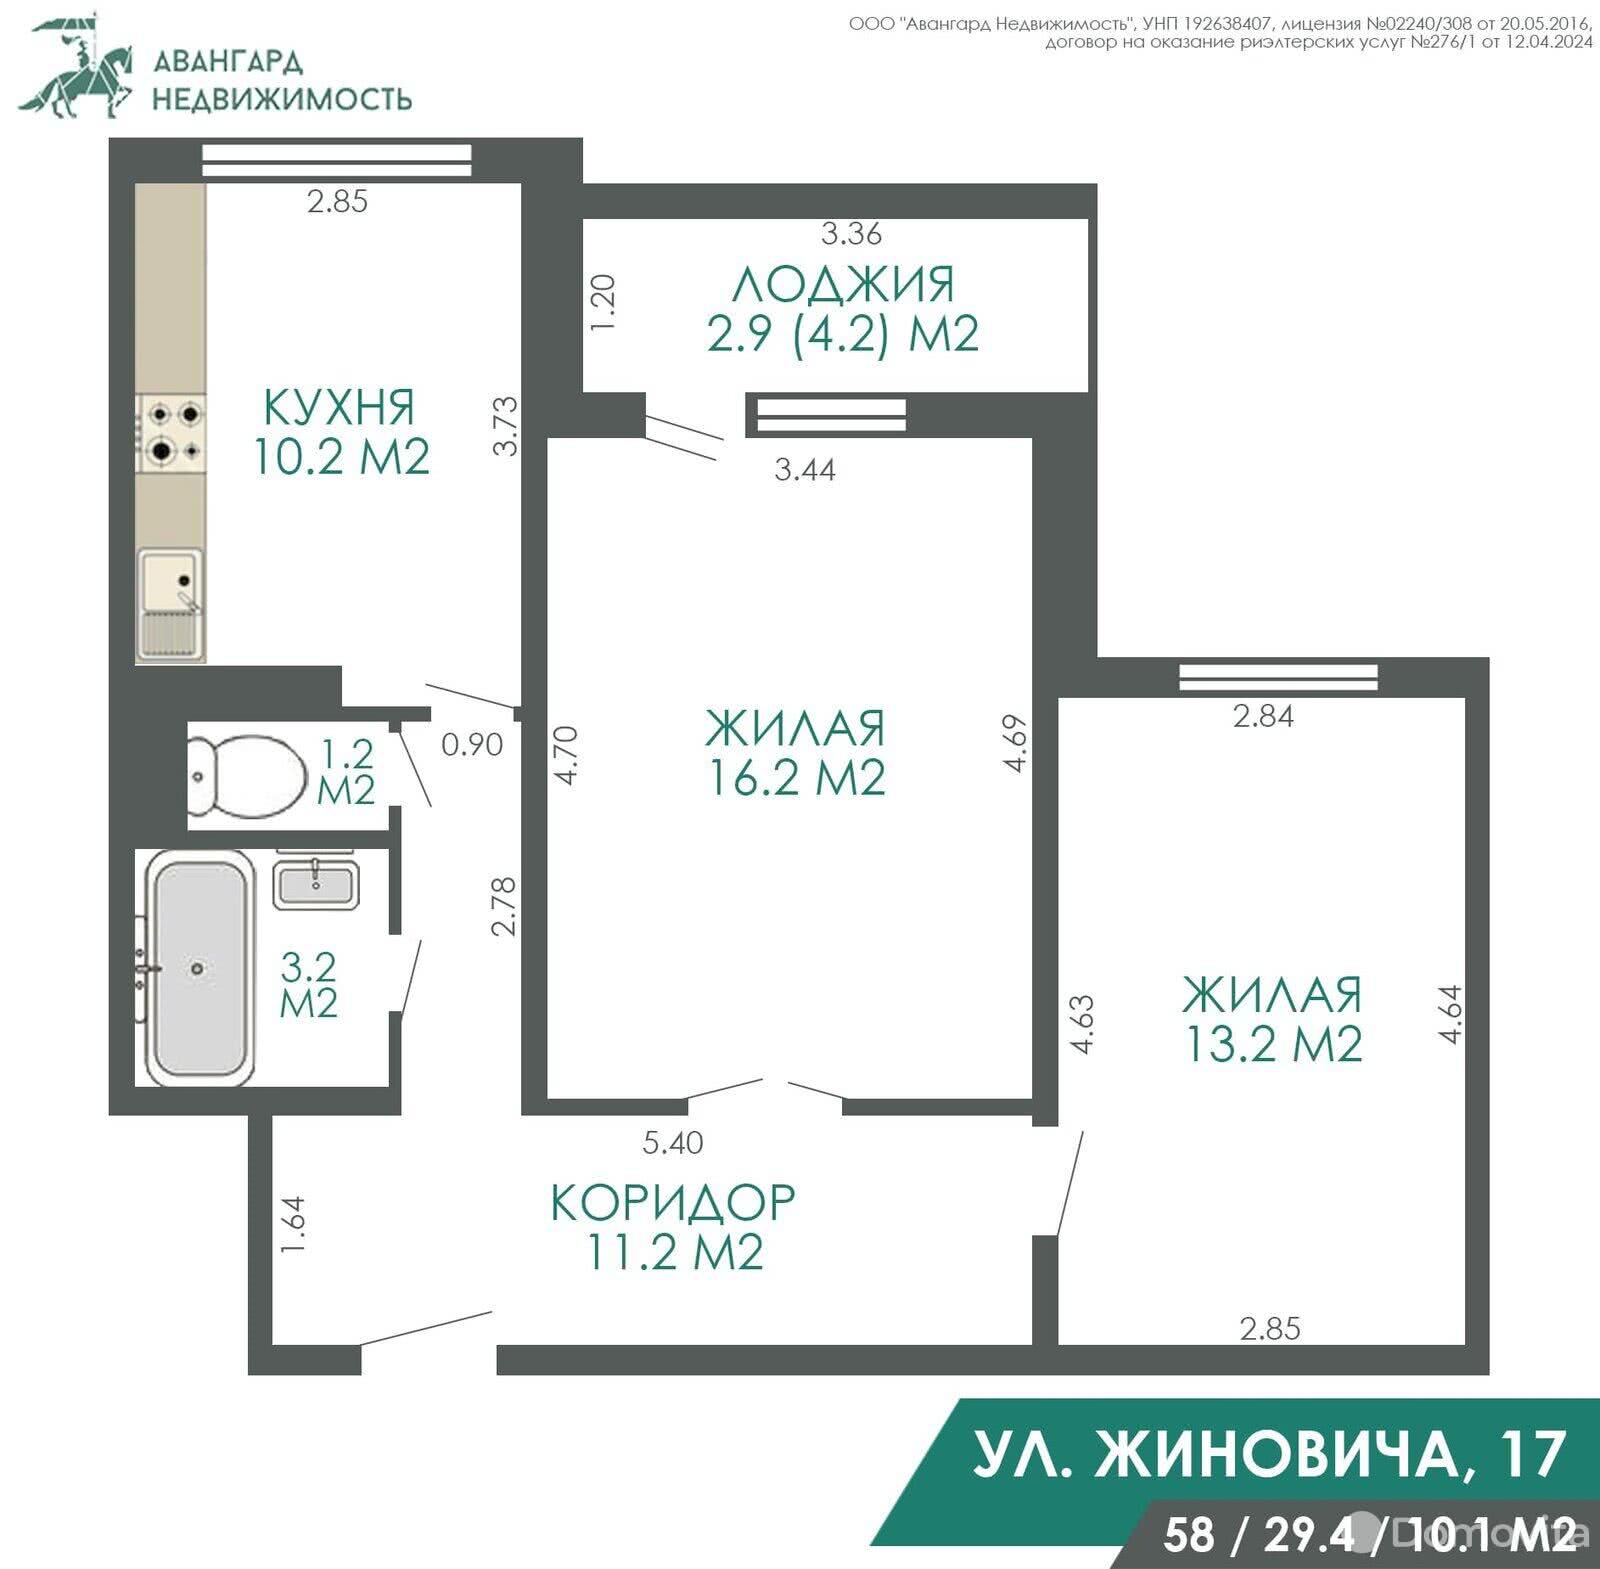 Стоимость продажи квартиры, Минск, ул. Иосифа Жиновича, д. 17